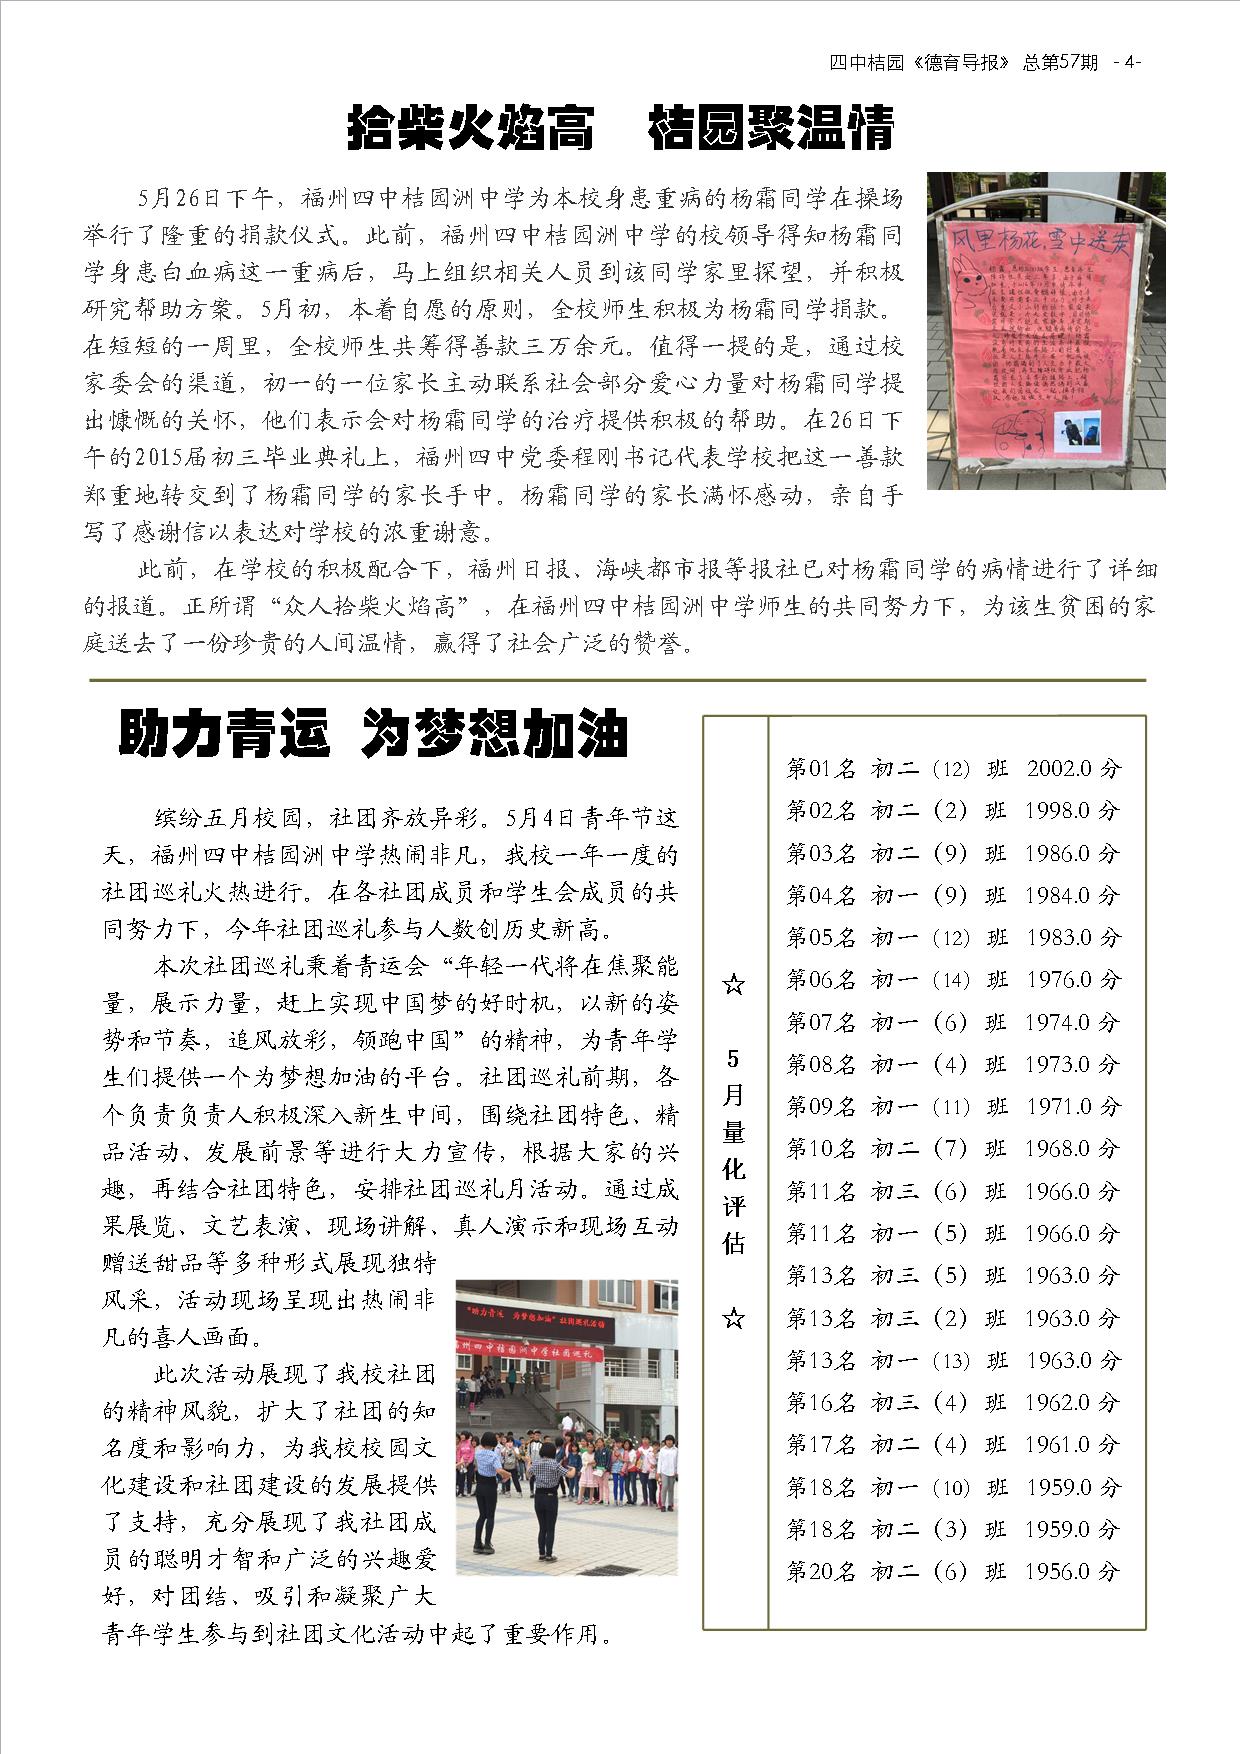 德育导报 NO.57  第6卷，第9期  2015年6月 (4).jpg